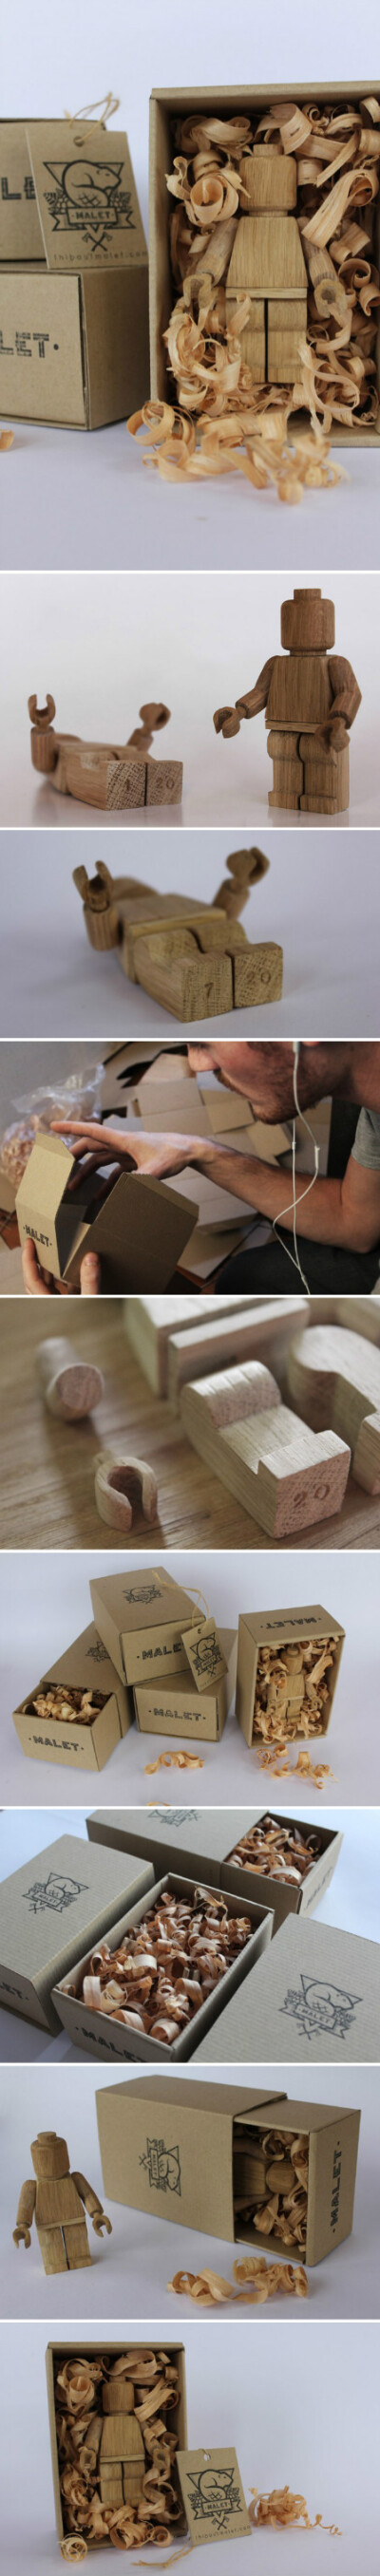 #潮流学堂#木头乐高人偶-来自法国Montpellier的设计师Thibaut Malet近日公布了一款限量版的“Art Toy”艺术玩具。这款灵感来源于乐高(LEGO)经典人偶的玩具，采用木材制造而成，而且全部以人手制作，每一个木制玩偶都…